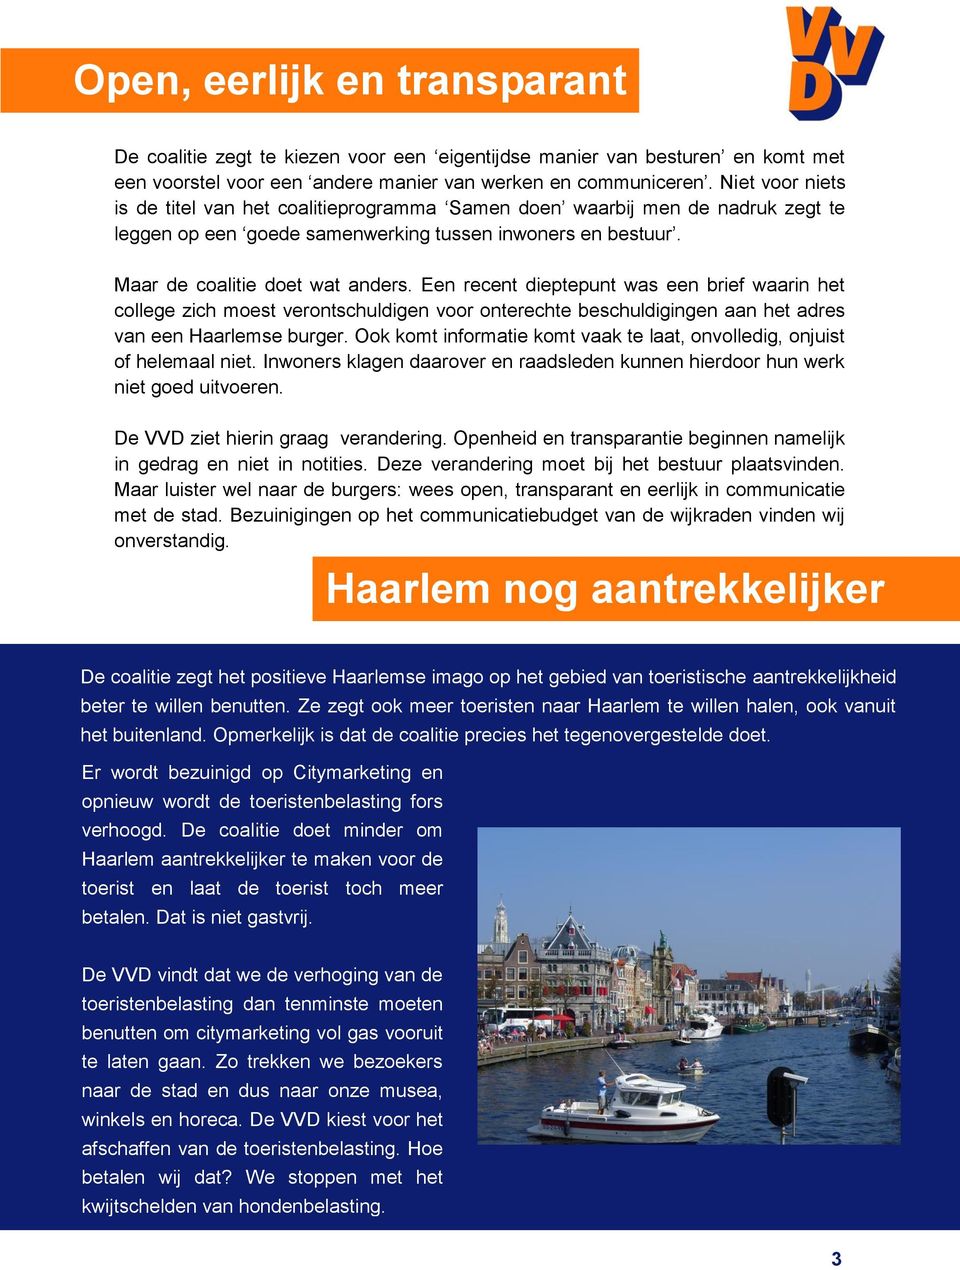 Een recent dieptepunt was een brief waarin het college zich moest verontschuldigen voor onterechte beschuldigingen aan het adres van een Haarlemse burger.